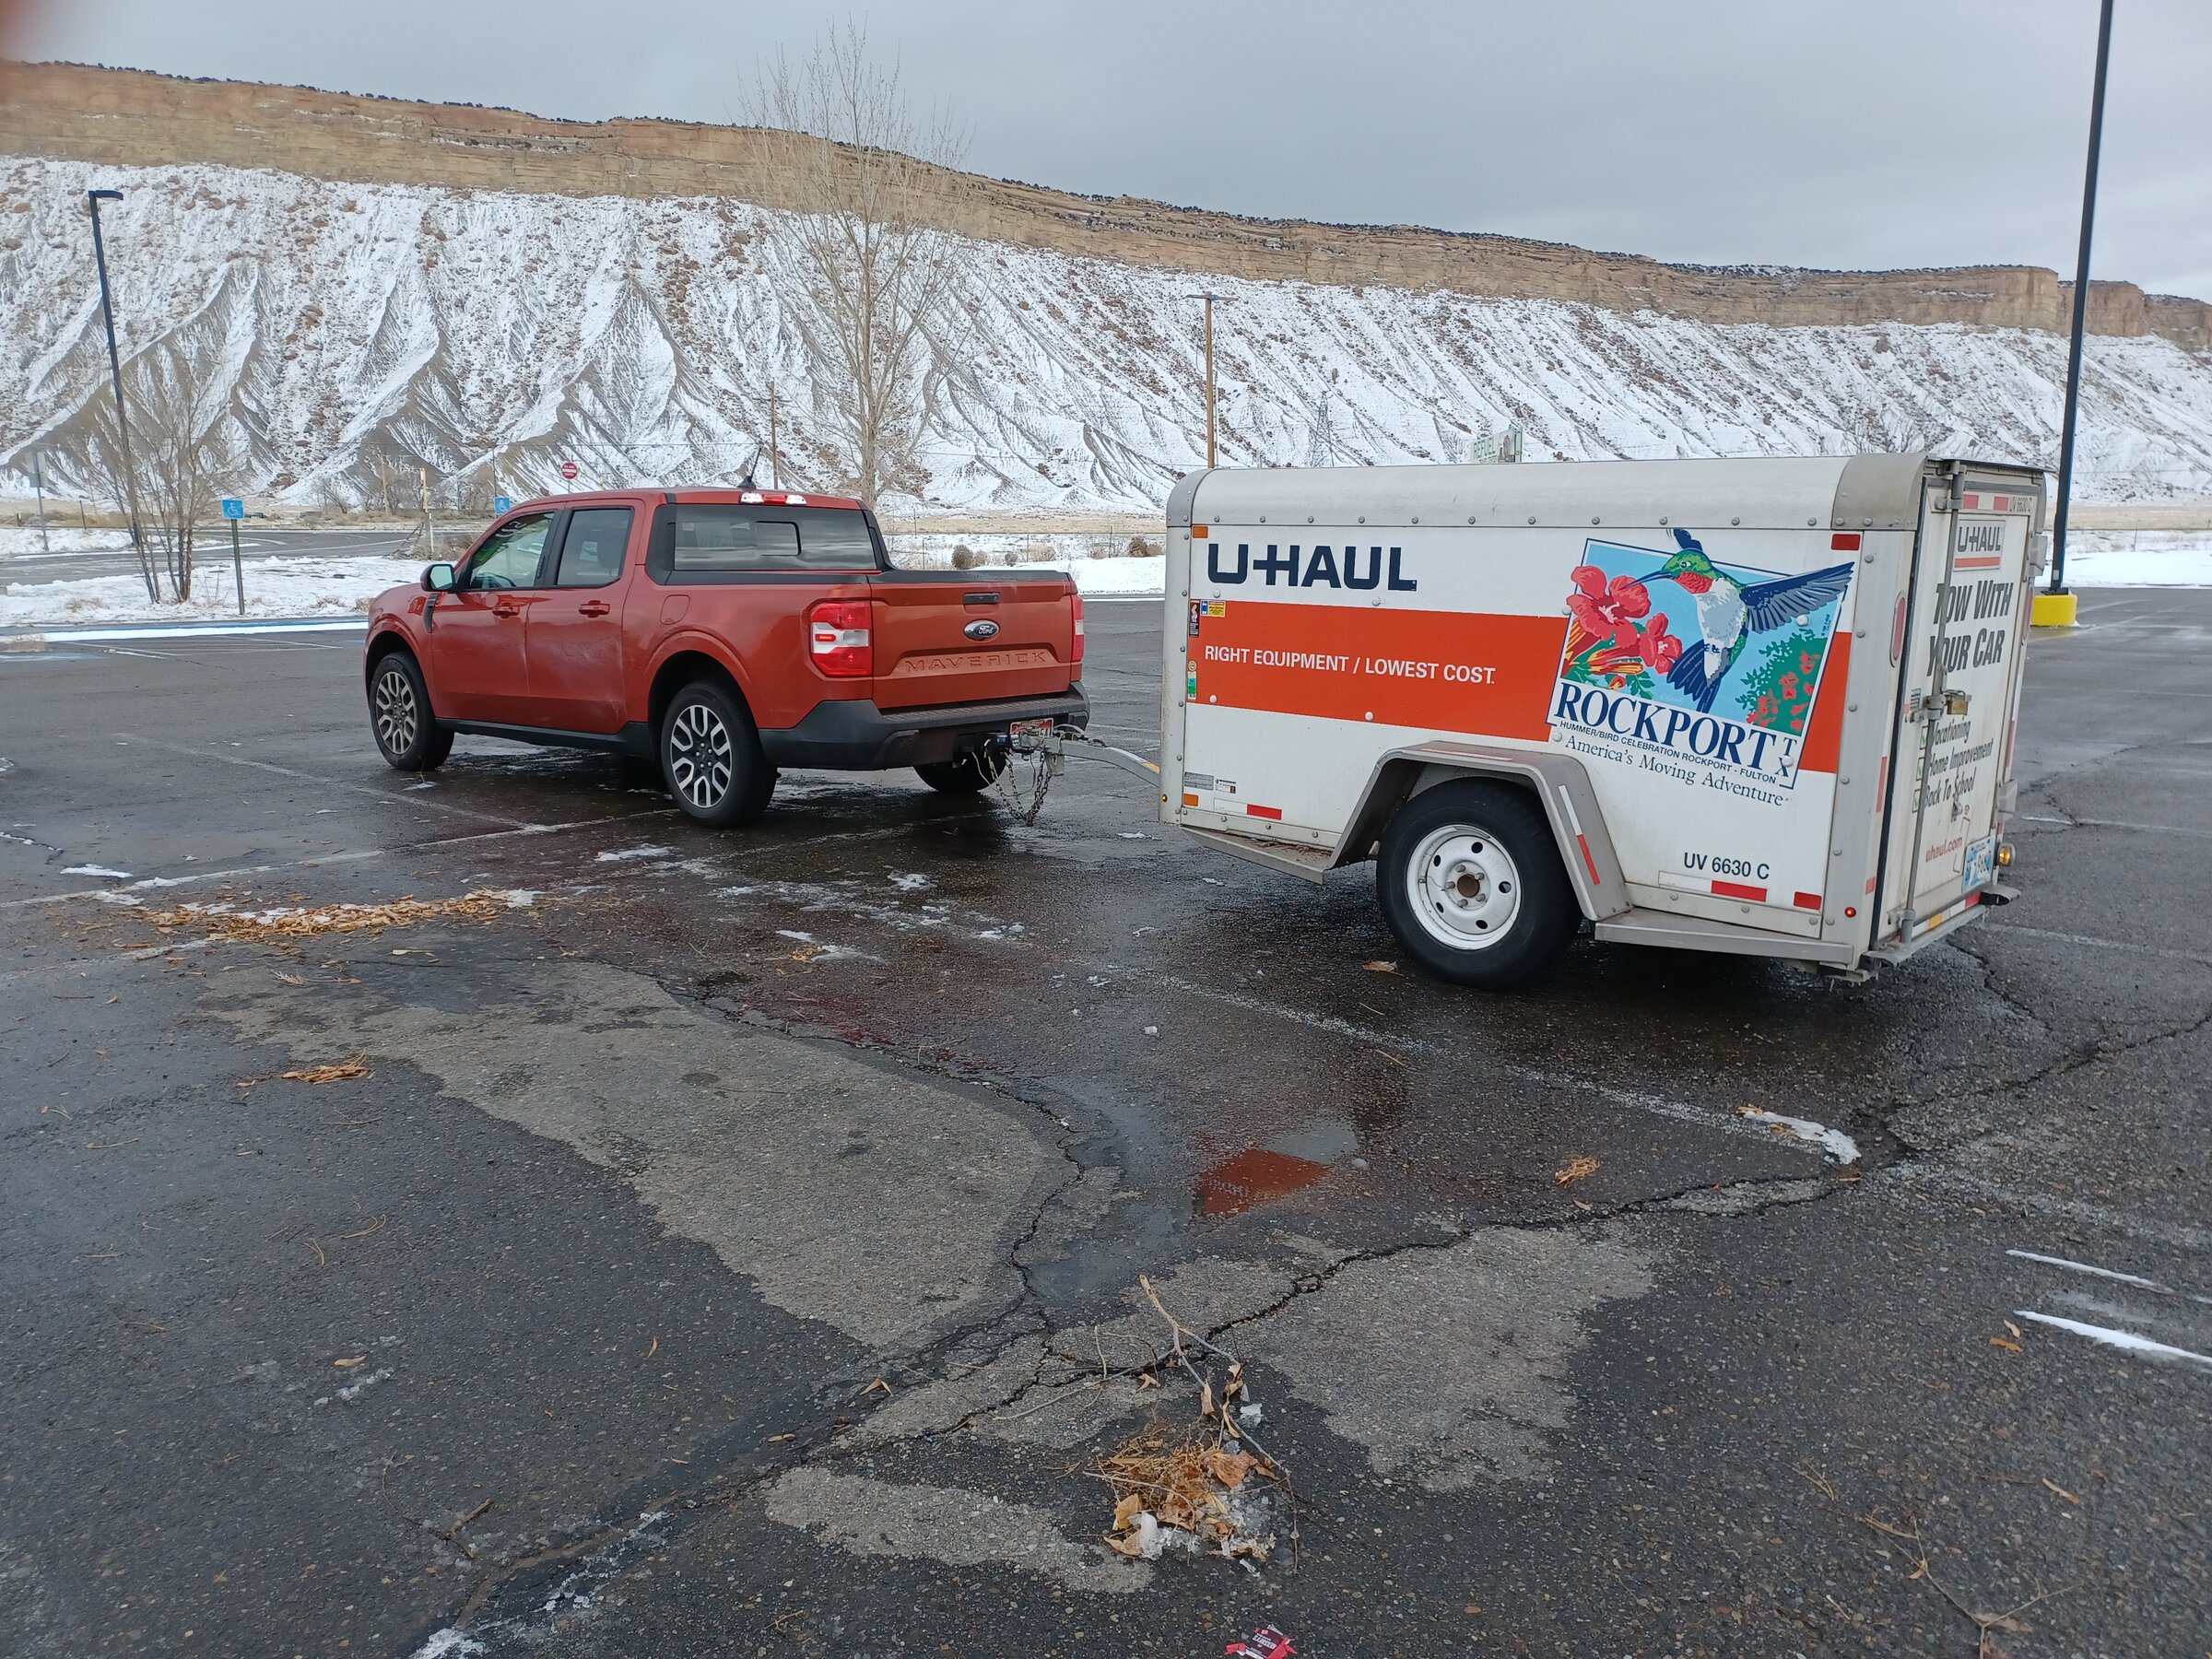 u-haul 4x8 trailer queen mattress